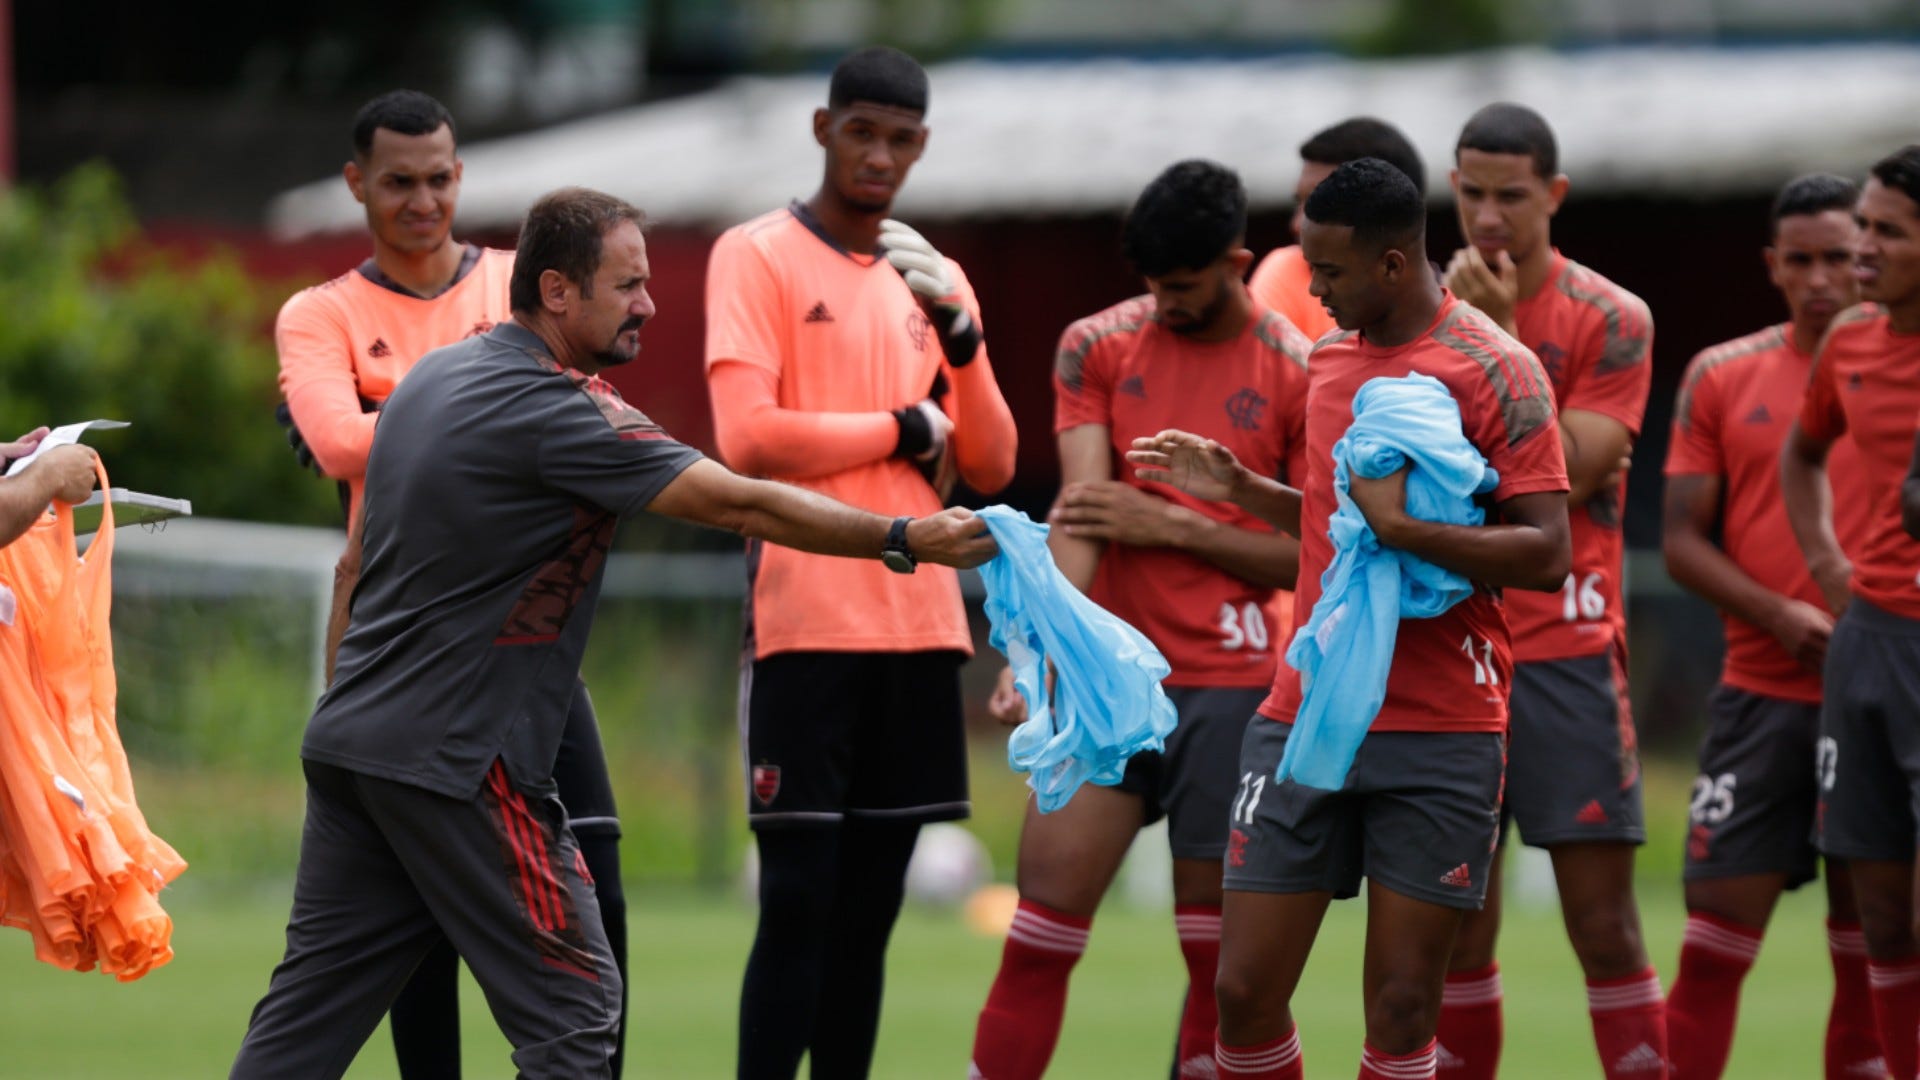 Copinha 2022: Veja onde assistir Oeste x Flamengo ao vivo na TV e online ·  Notícias da TV